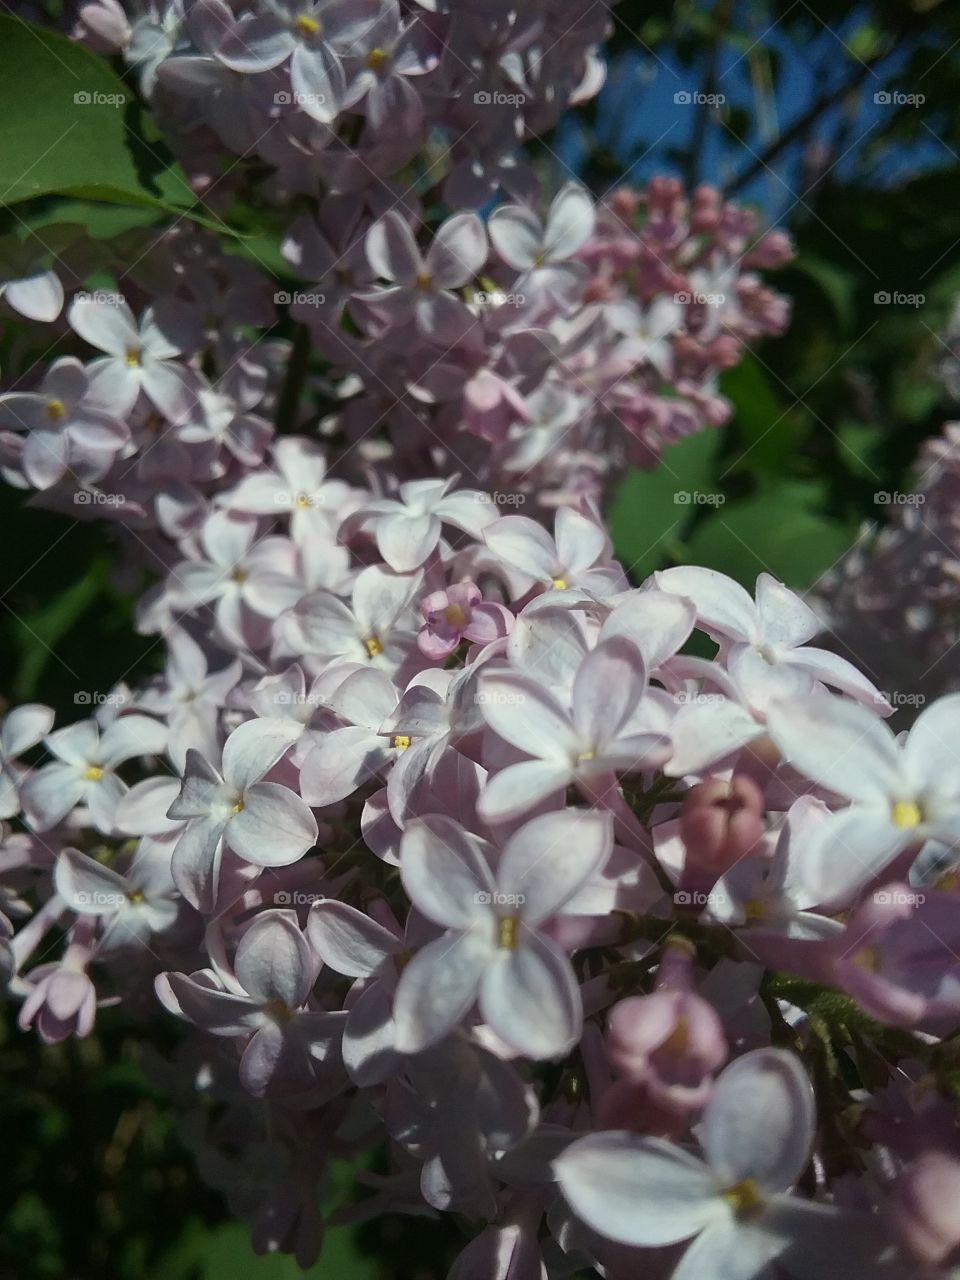 Close up of lilacs